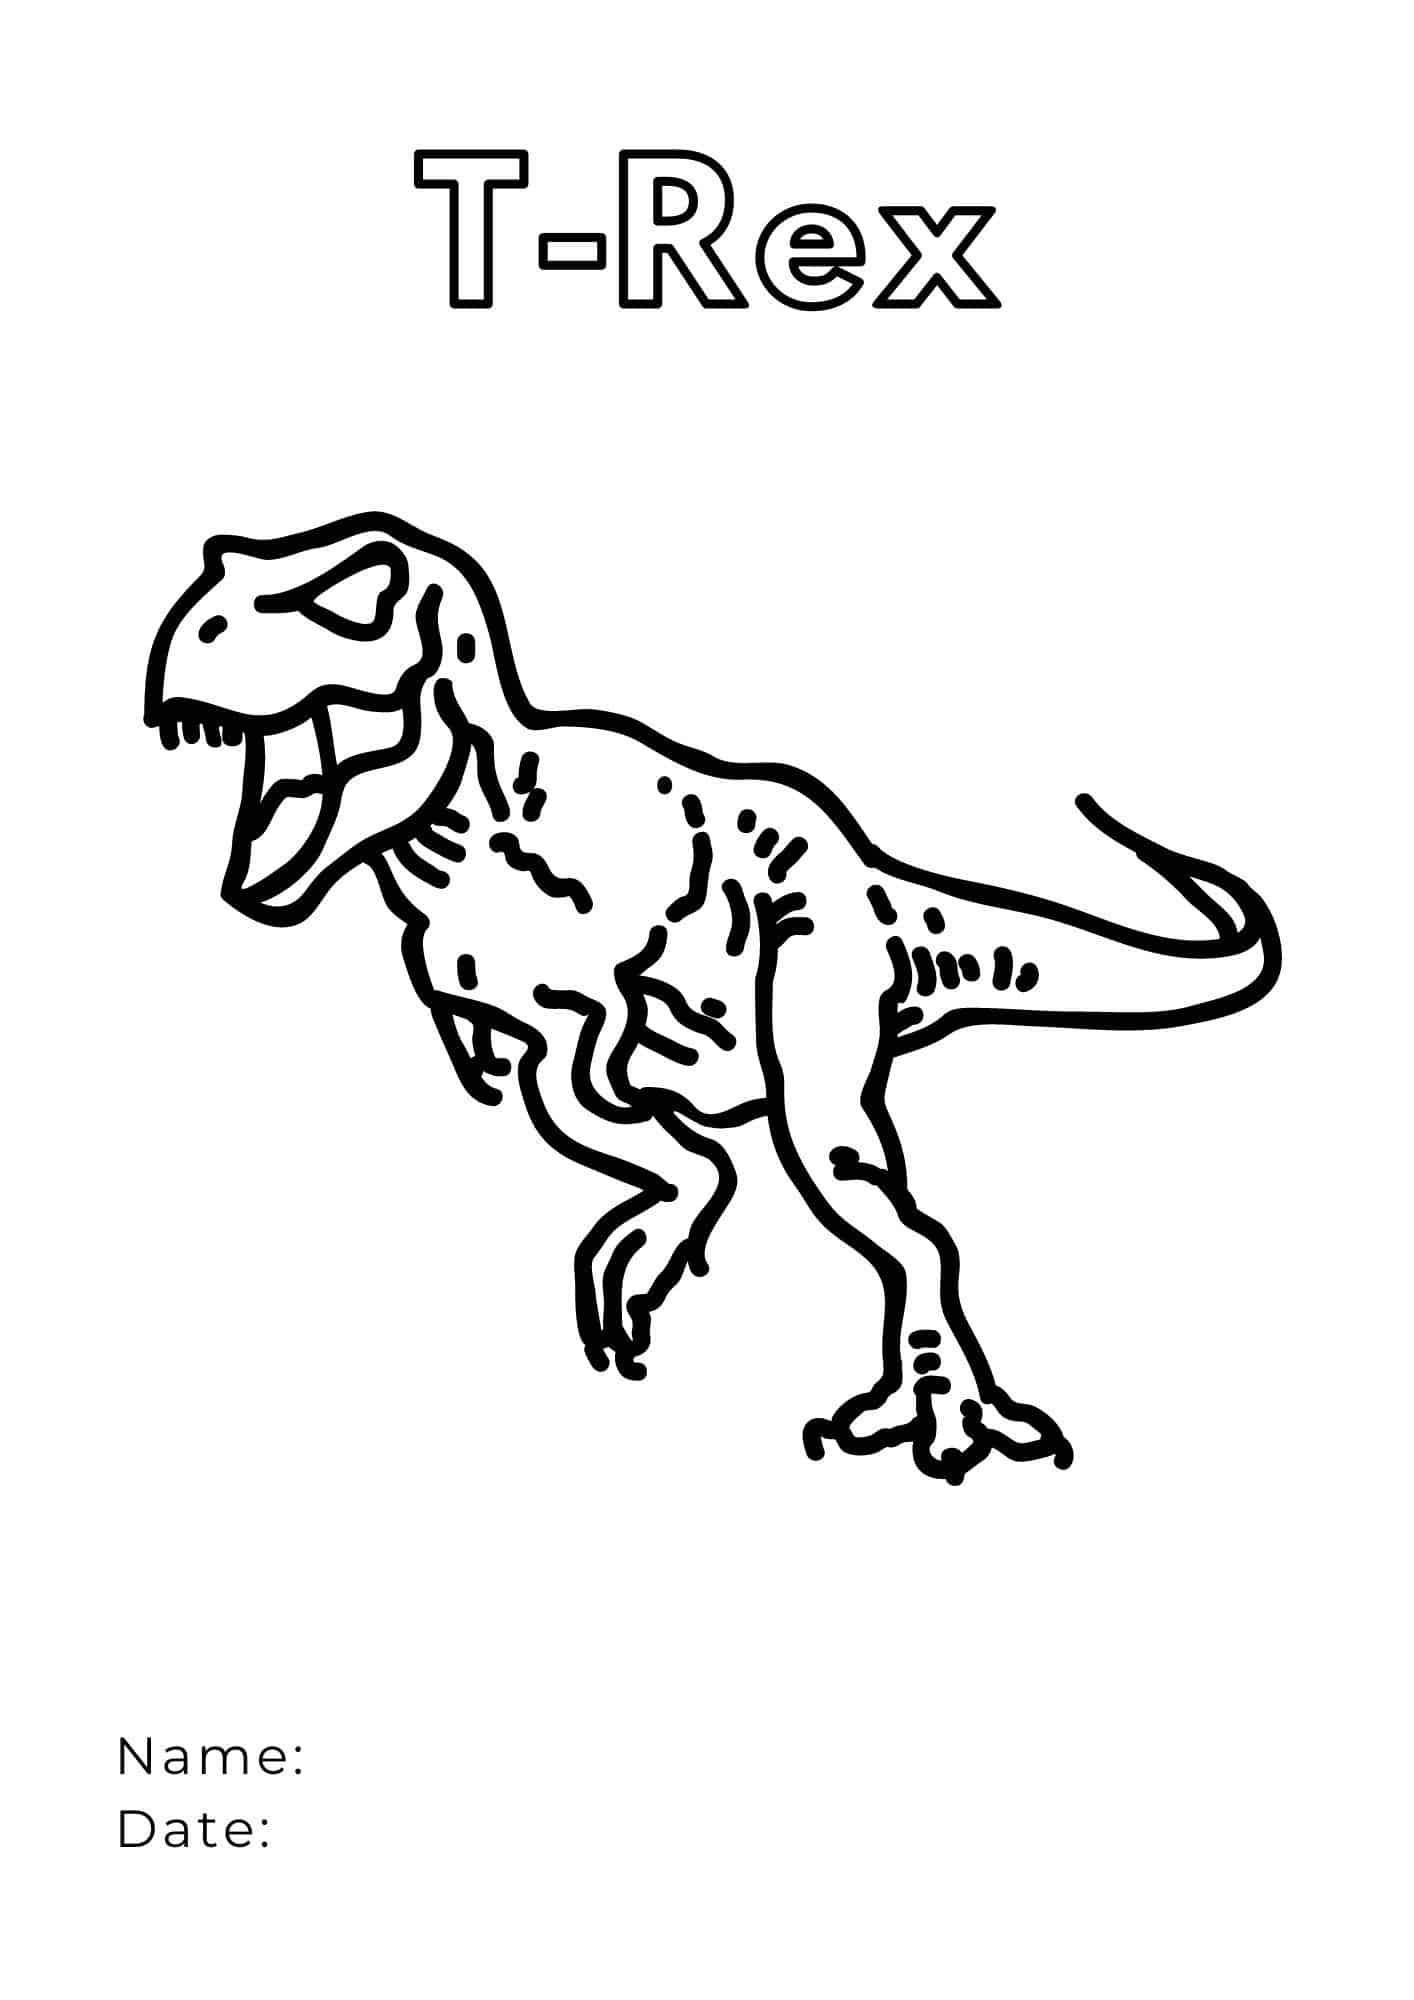 T rex coloring pages ðð dive into prehistoric adventures